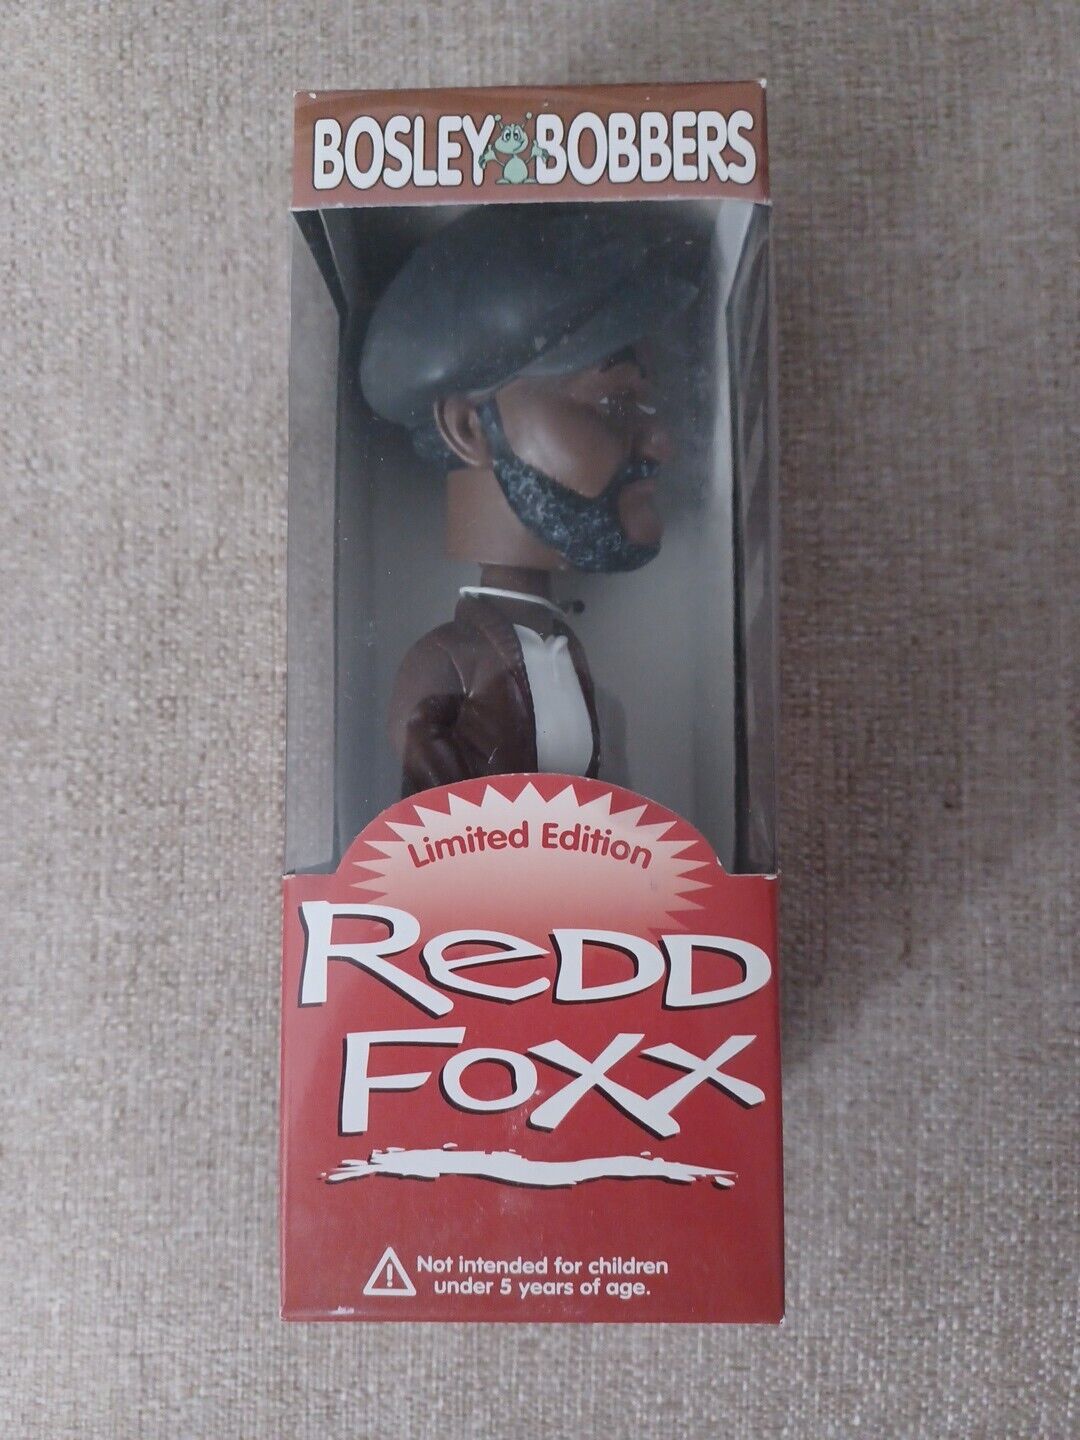 Redd Foxx Limited Edition Bosley Bobbers